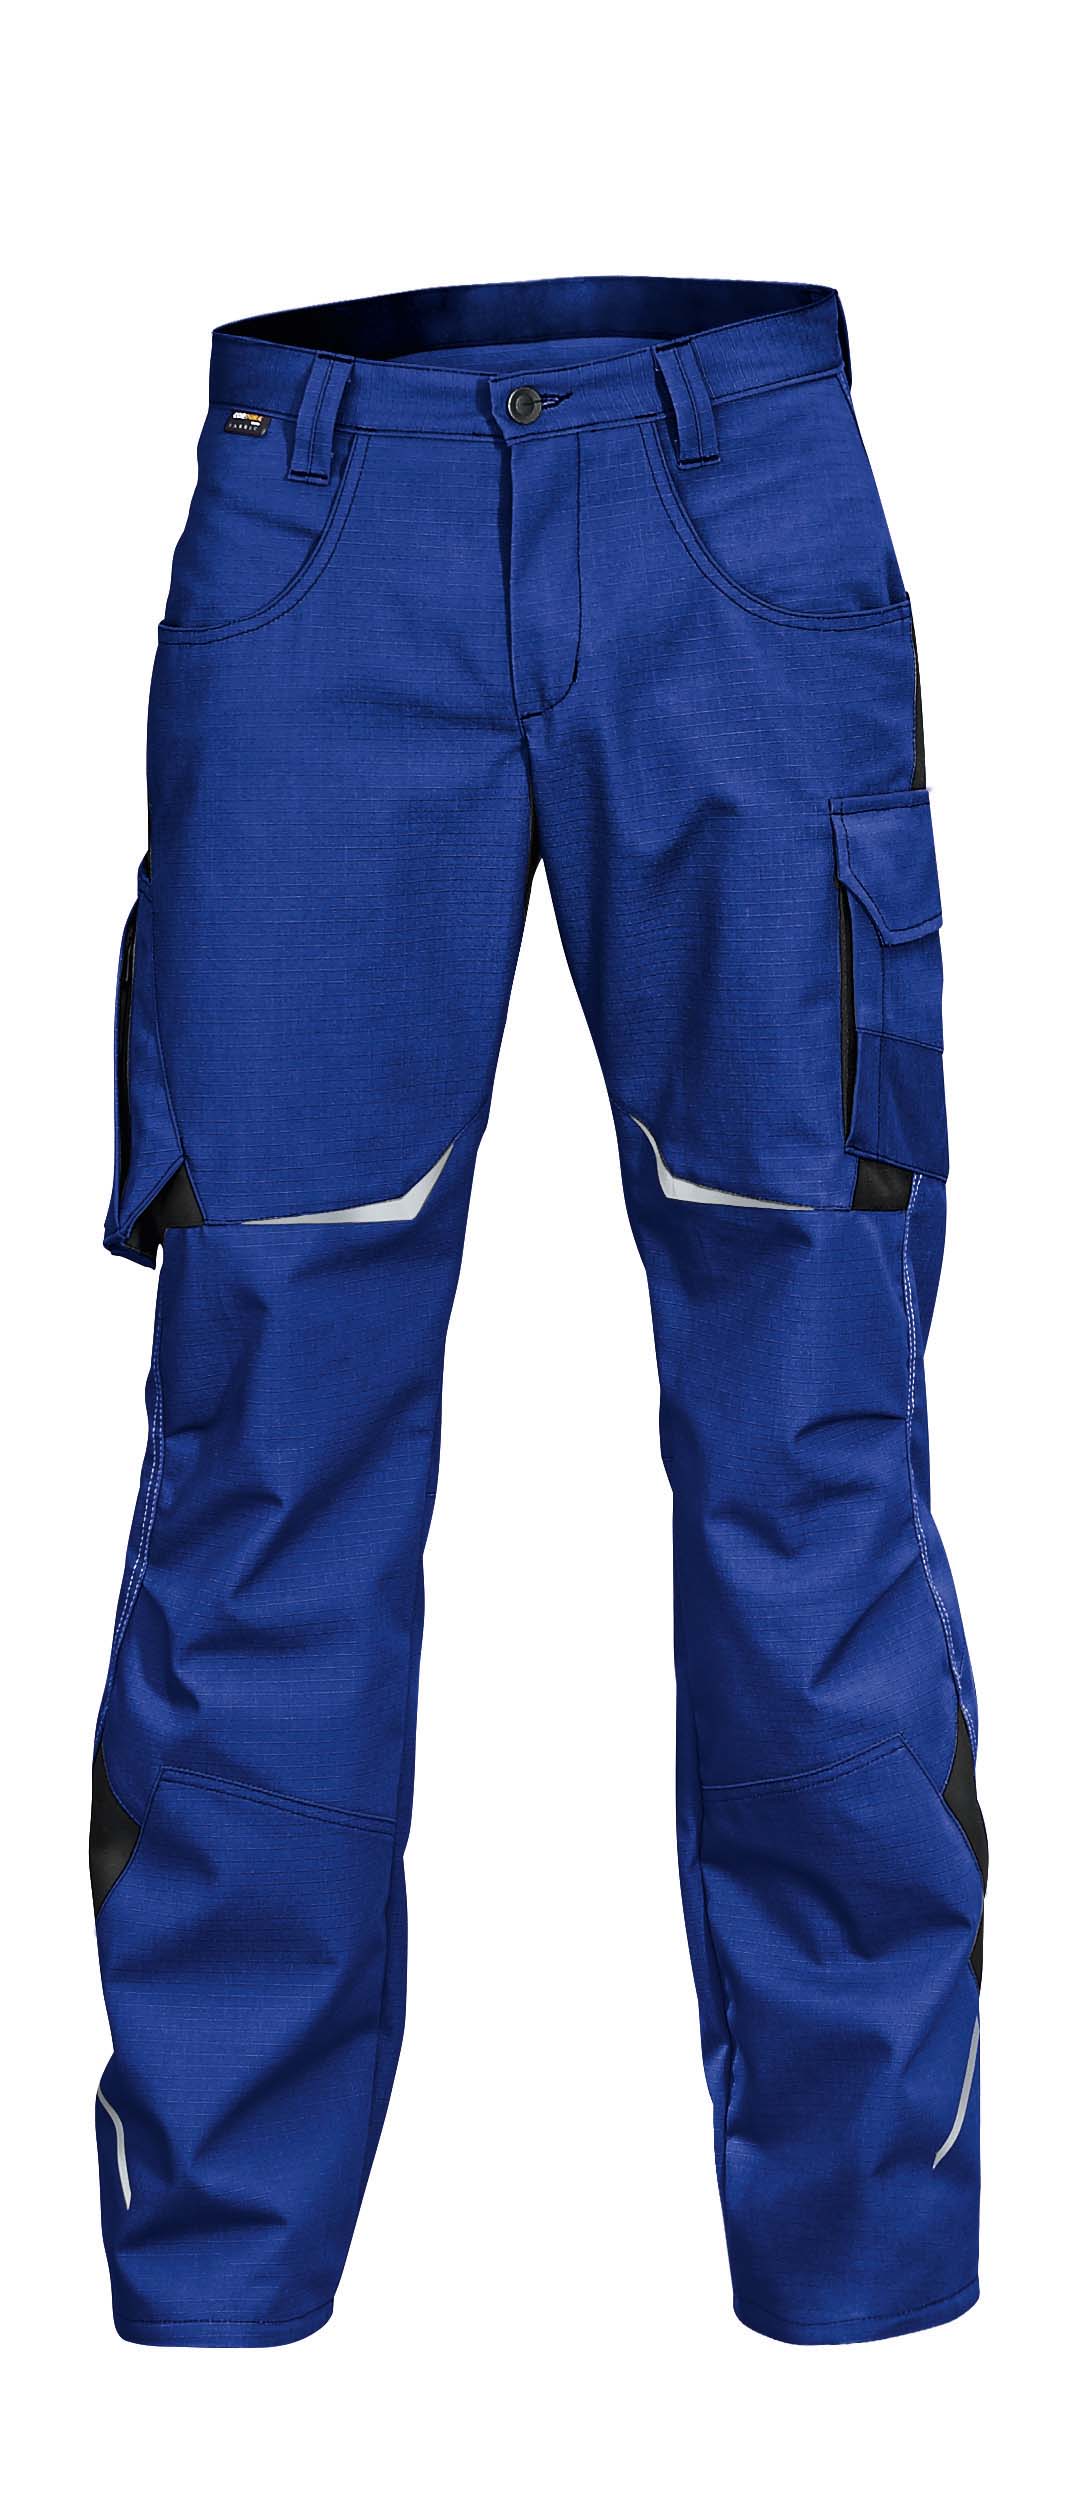 Pulsschlag schwarz - Arbeitsschutz / Hose Arbeitshose blau Kübler Reiter